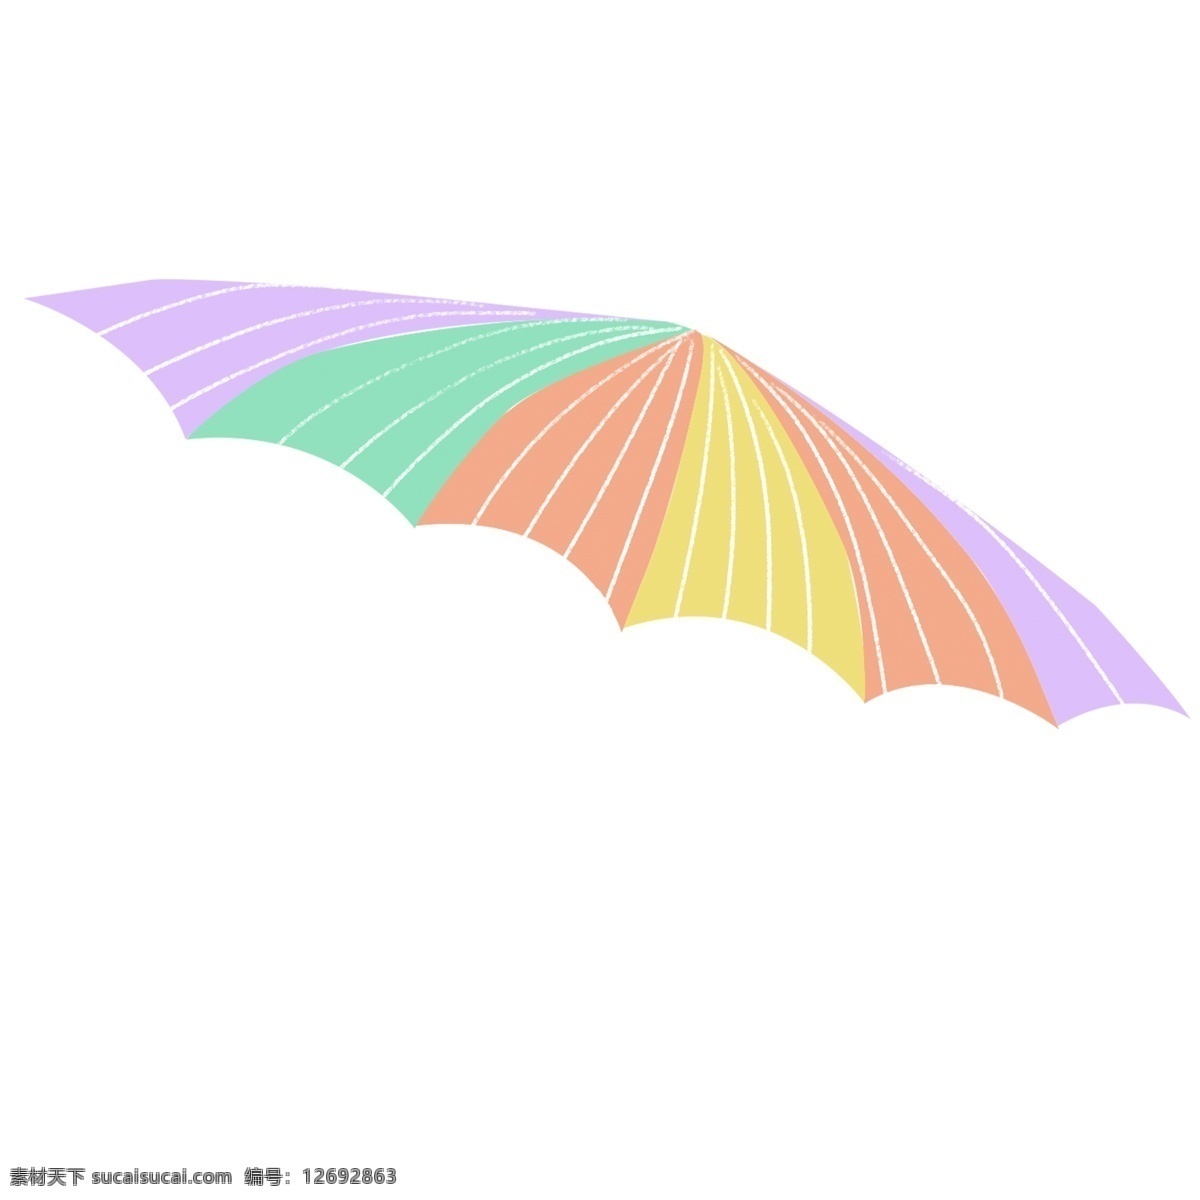 彩色 装饰 小花 伞 图案 小雨伞 卡通 小清新 创意 手绘 绘画元素 现代 简约